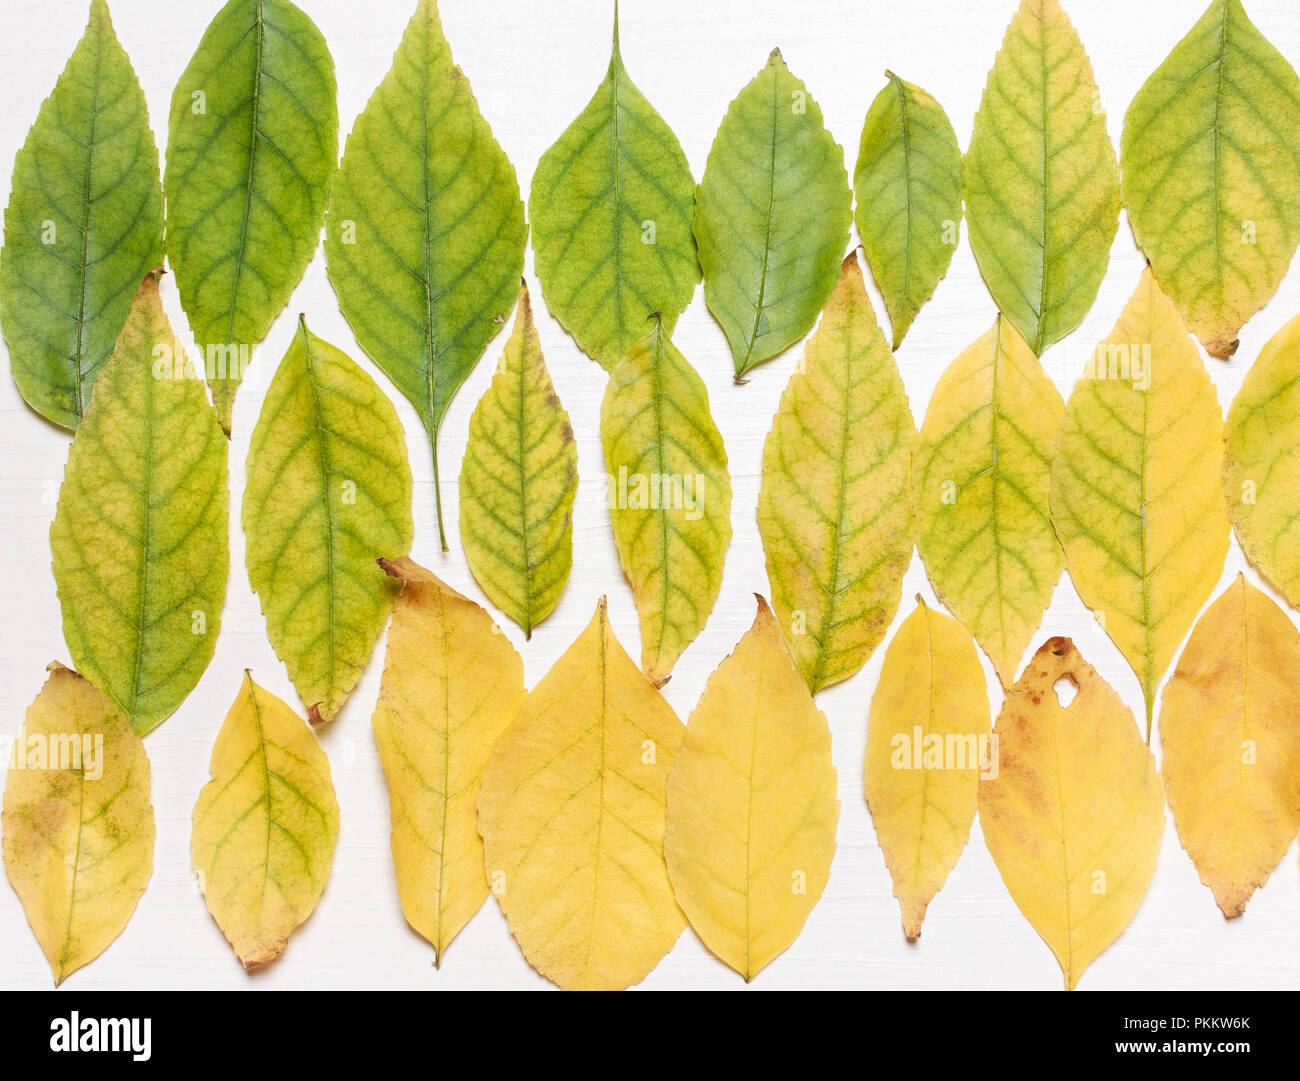 Arrière-plan de feuilles jaunes et verts dans une rangée. L' affichage. Concept d'automne Banque D'Images